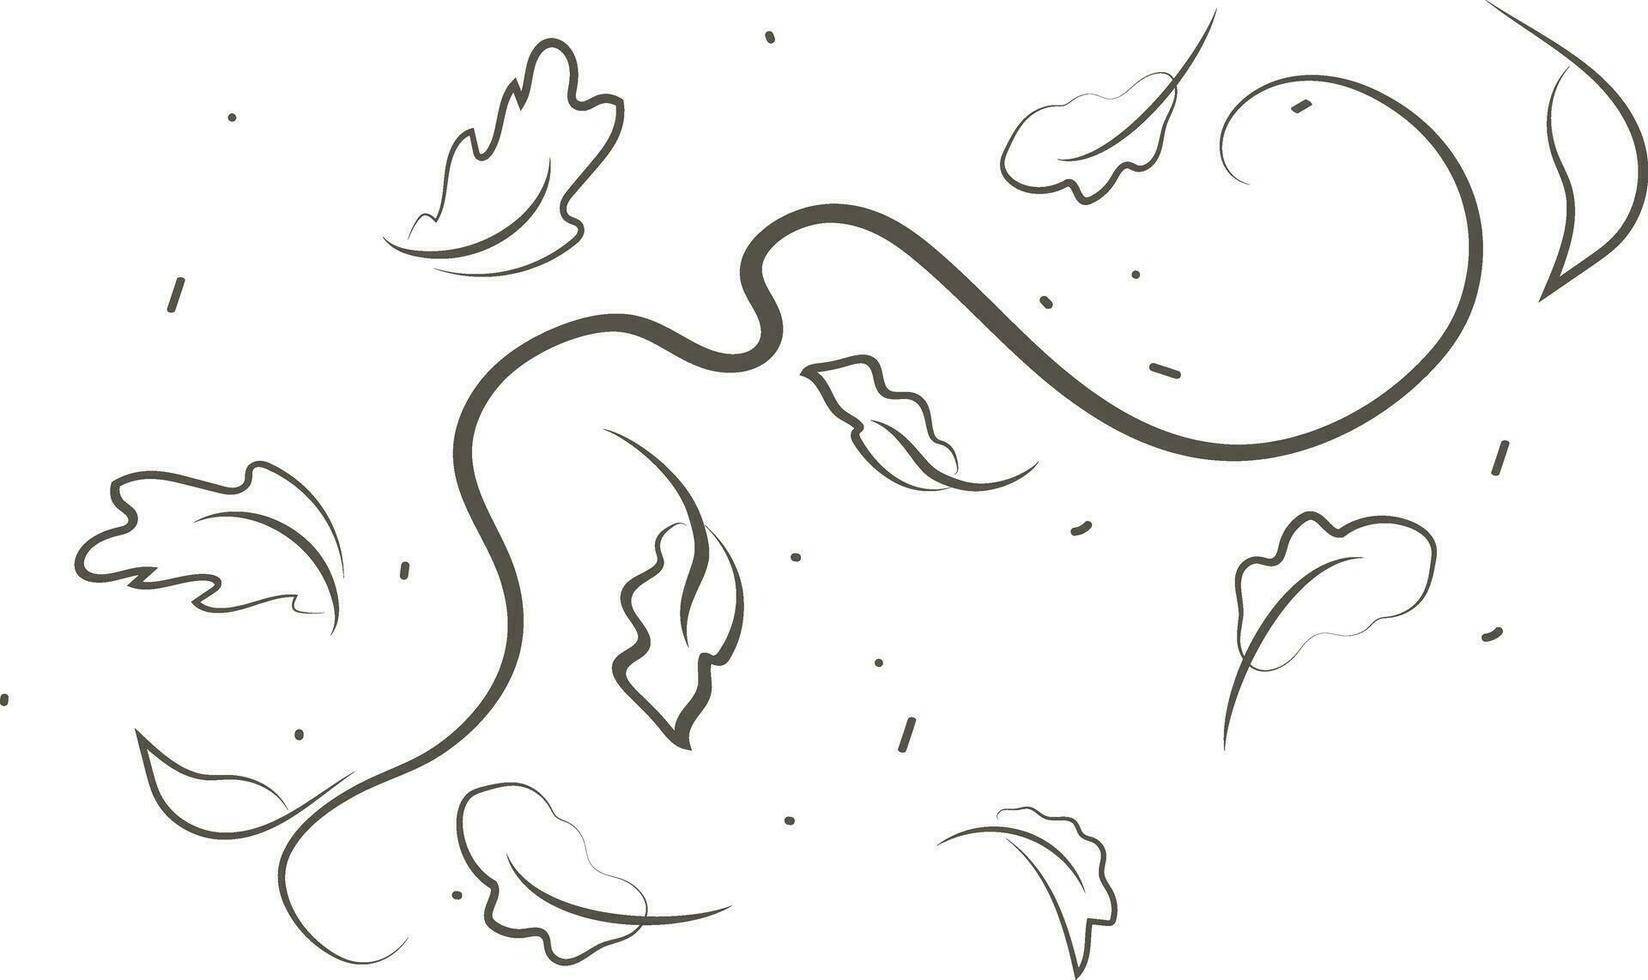 schema disegno di un' respiro di vento.vento soffio impostato nel linea style.wave fluente illustrazione con mano disegnato scarabocchio cartone animato stile. vettore